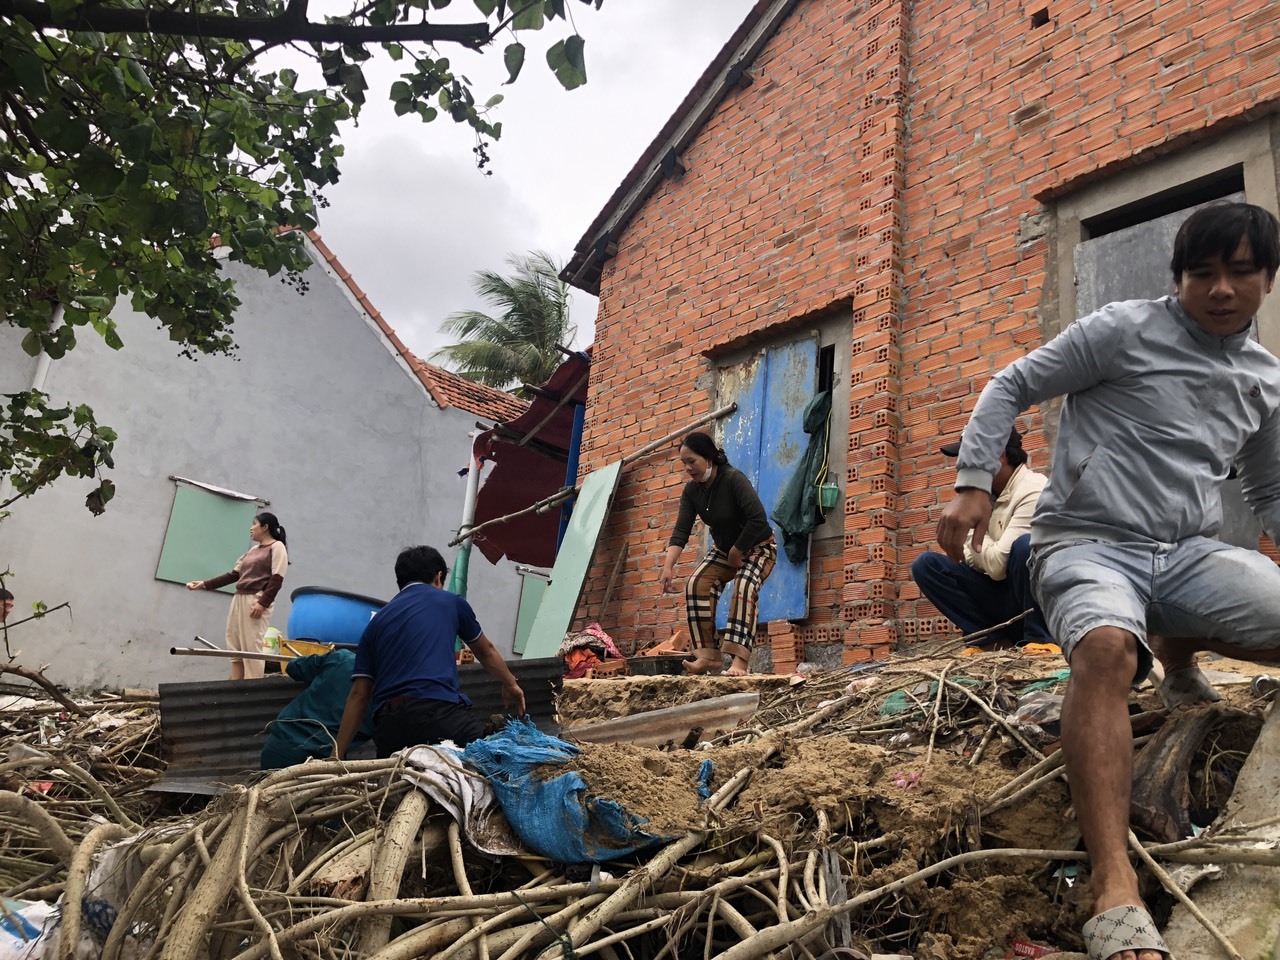 Triều cường đánh sát vào nhà dân cư khu vực dân cư huyện Tuy An, Phú Yên. Ảnh: Nguyễn Linh